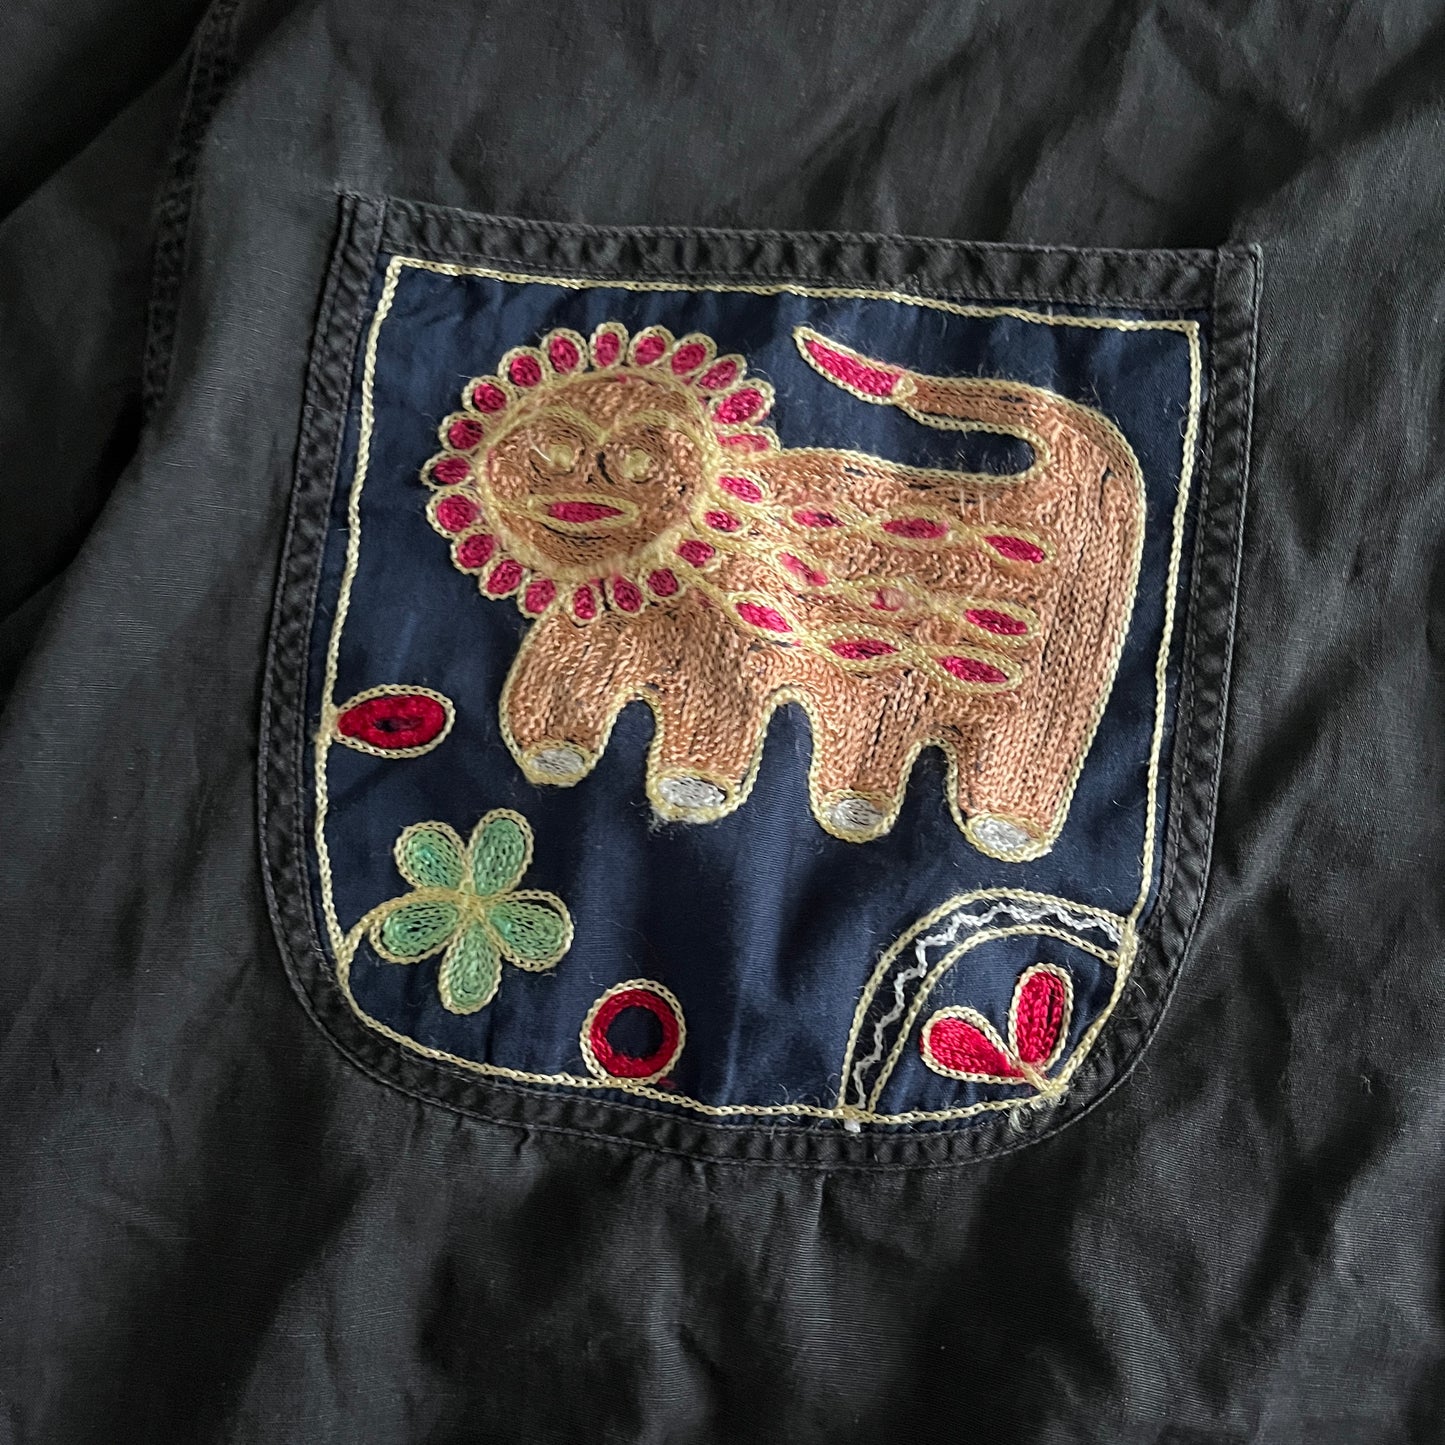 LE GARACE フランス製 飾り刺繍 アニマル柄 長袖シャツ